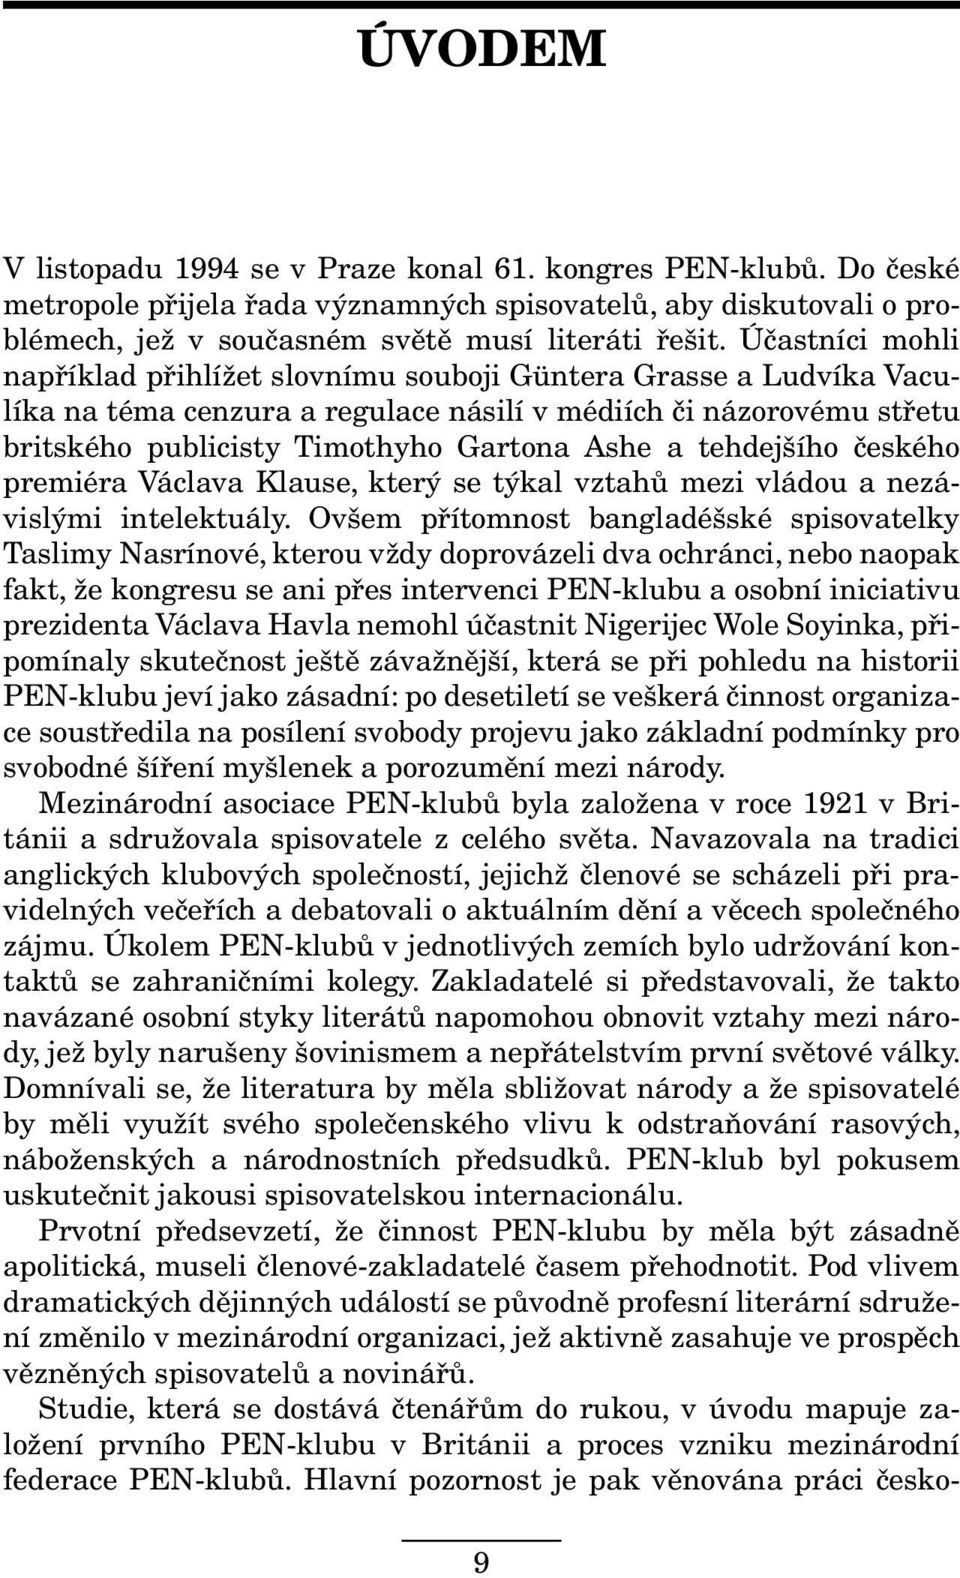 tehdejšího českého premiéra Václava Klause, který se týkal vztahů mezi vládou a nezávislými intelektuály.